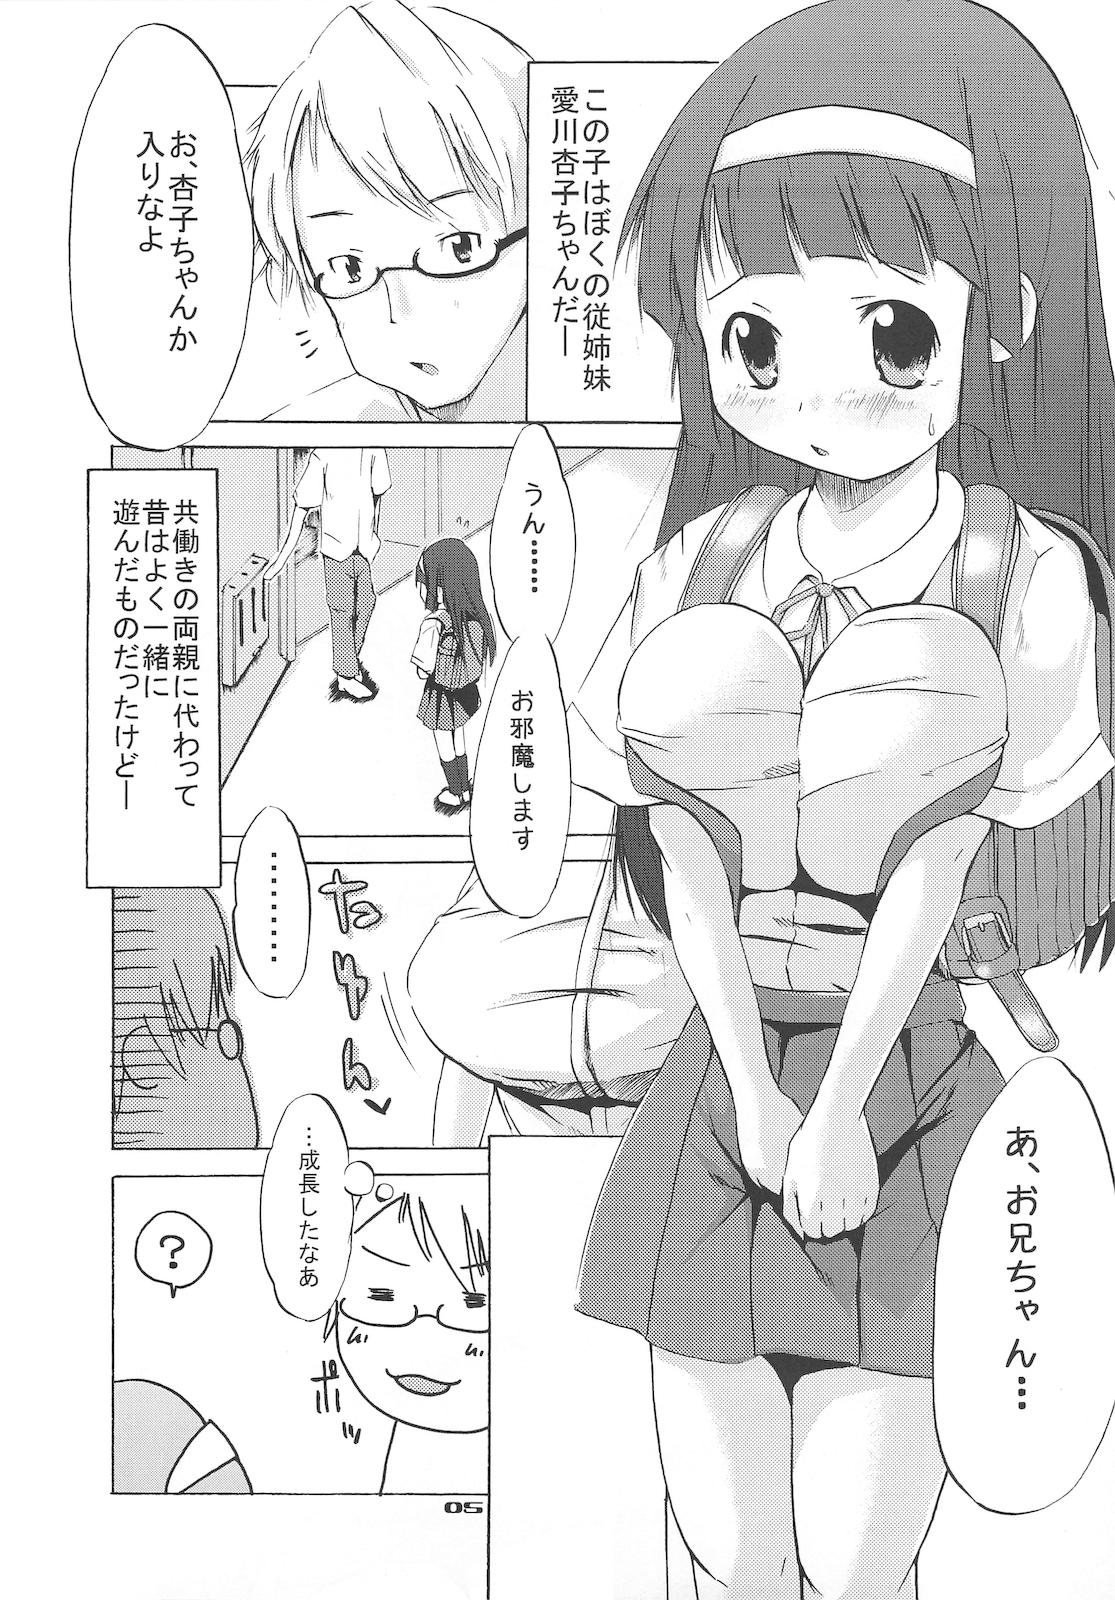 18 Year Old Tsuri Suka# Adolescente - Page 4